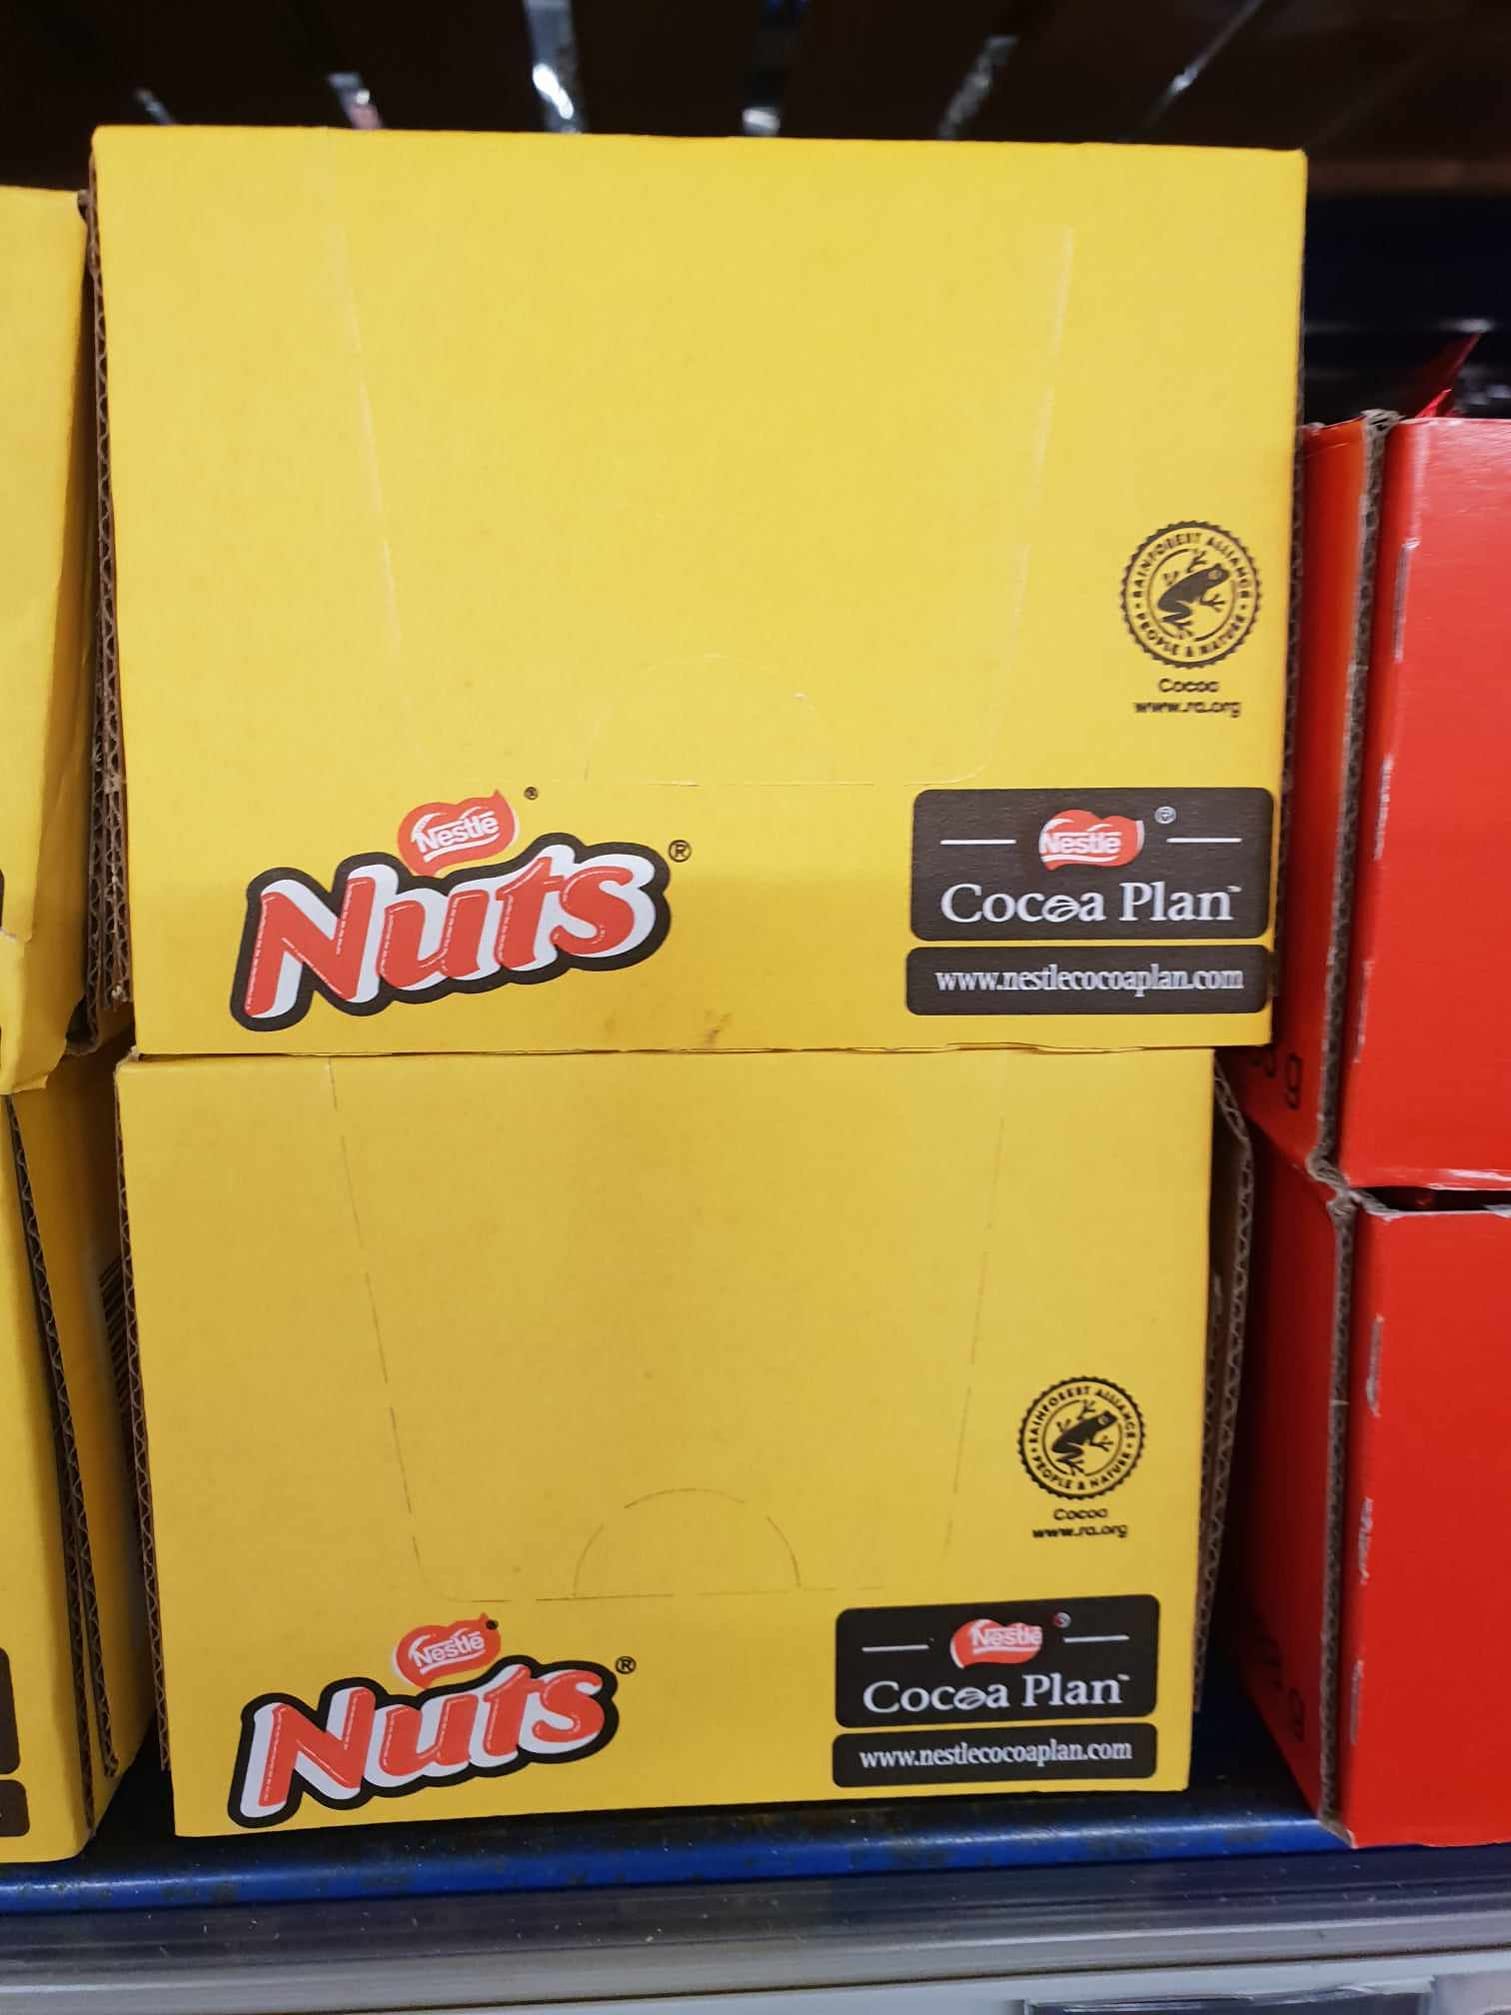 Nestlé in Deutschland: Der Giftfrosch
                      (Pfeilgiftfrosch) ist auch auf dem
                      Schokoladen-Nussprodukt "Nuts"